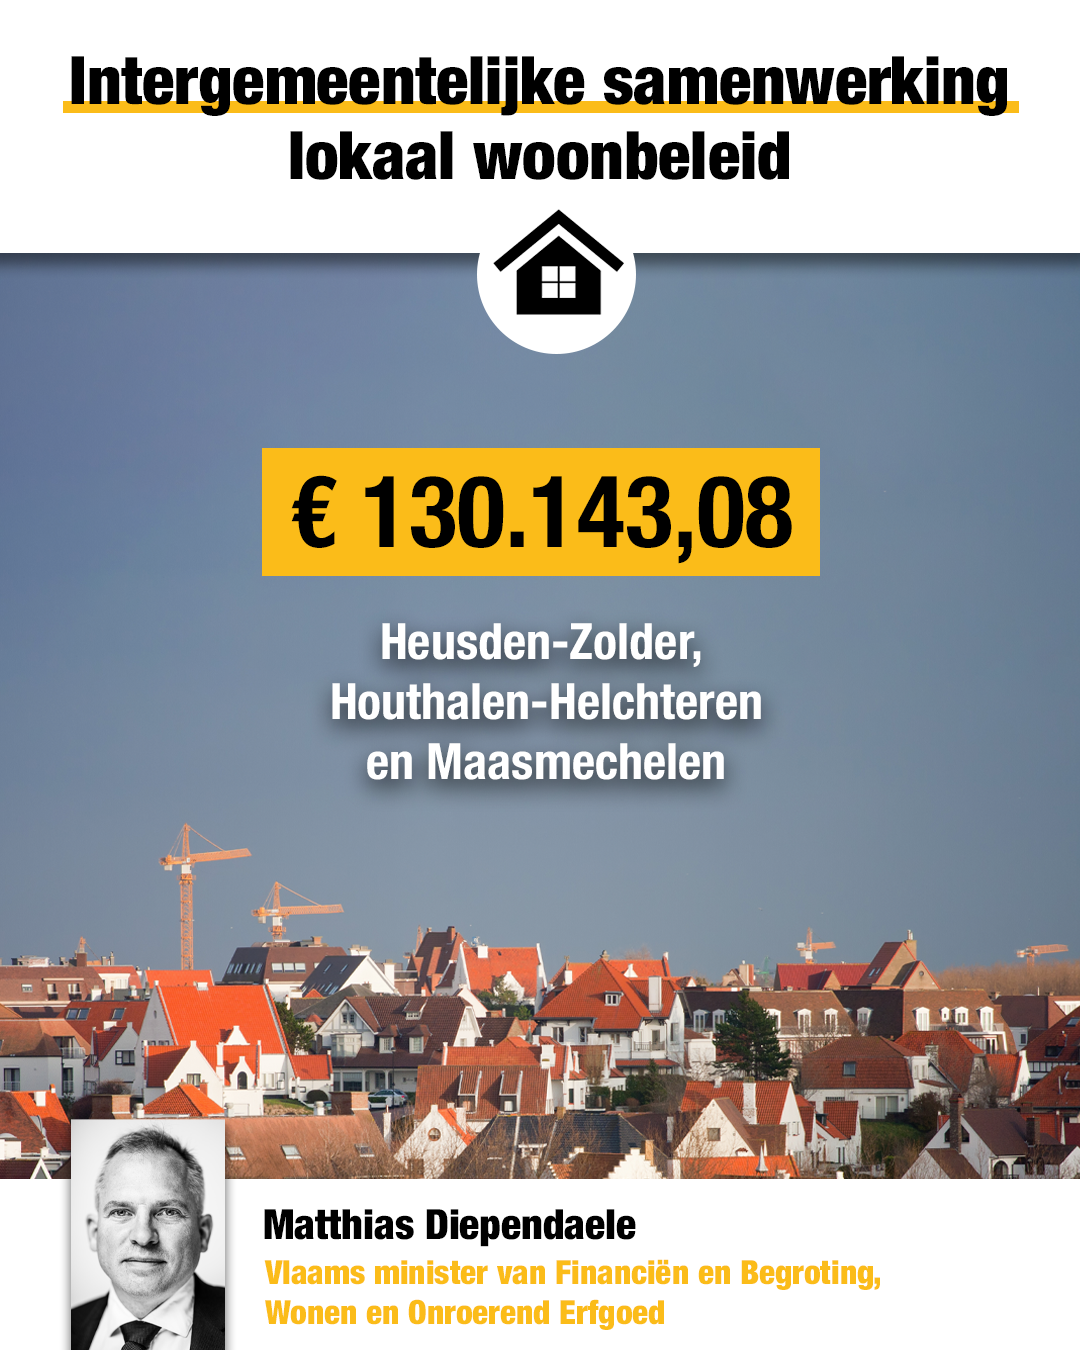 “Vlaams minister van Wonen investeert in Heusden-Zolder. Dankzij deze samenwerking zorgen we voor een divers en betaalbaar woonaanbod in de regio en werken we aan de kwaliteit van de woningen en de woonomgeving in Heusden-Zolder.”